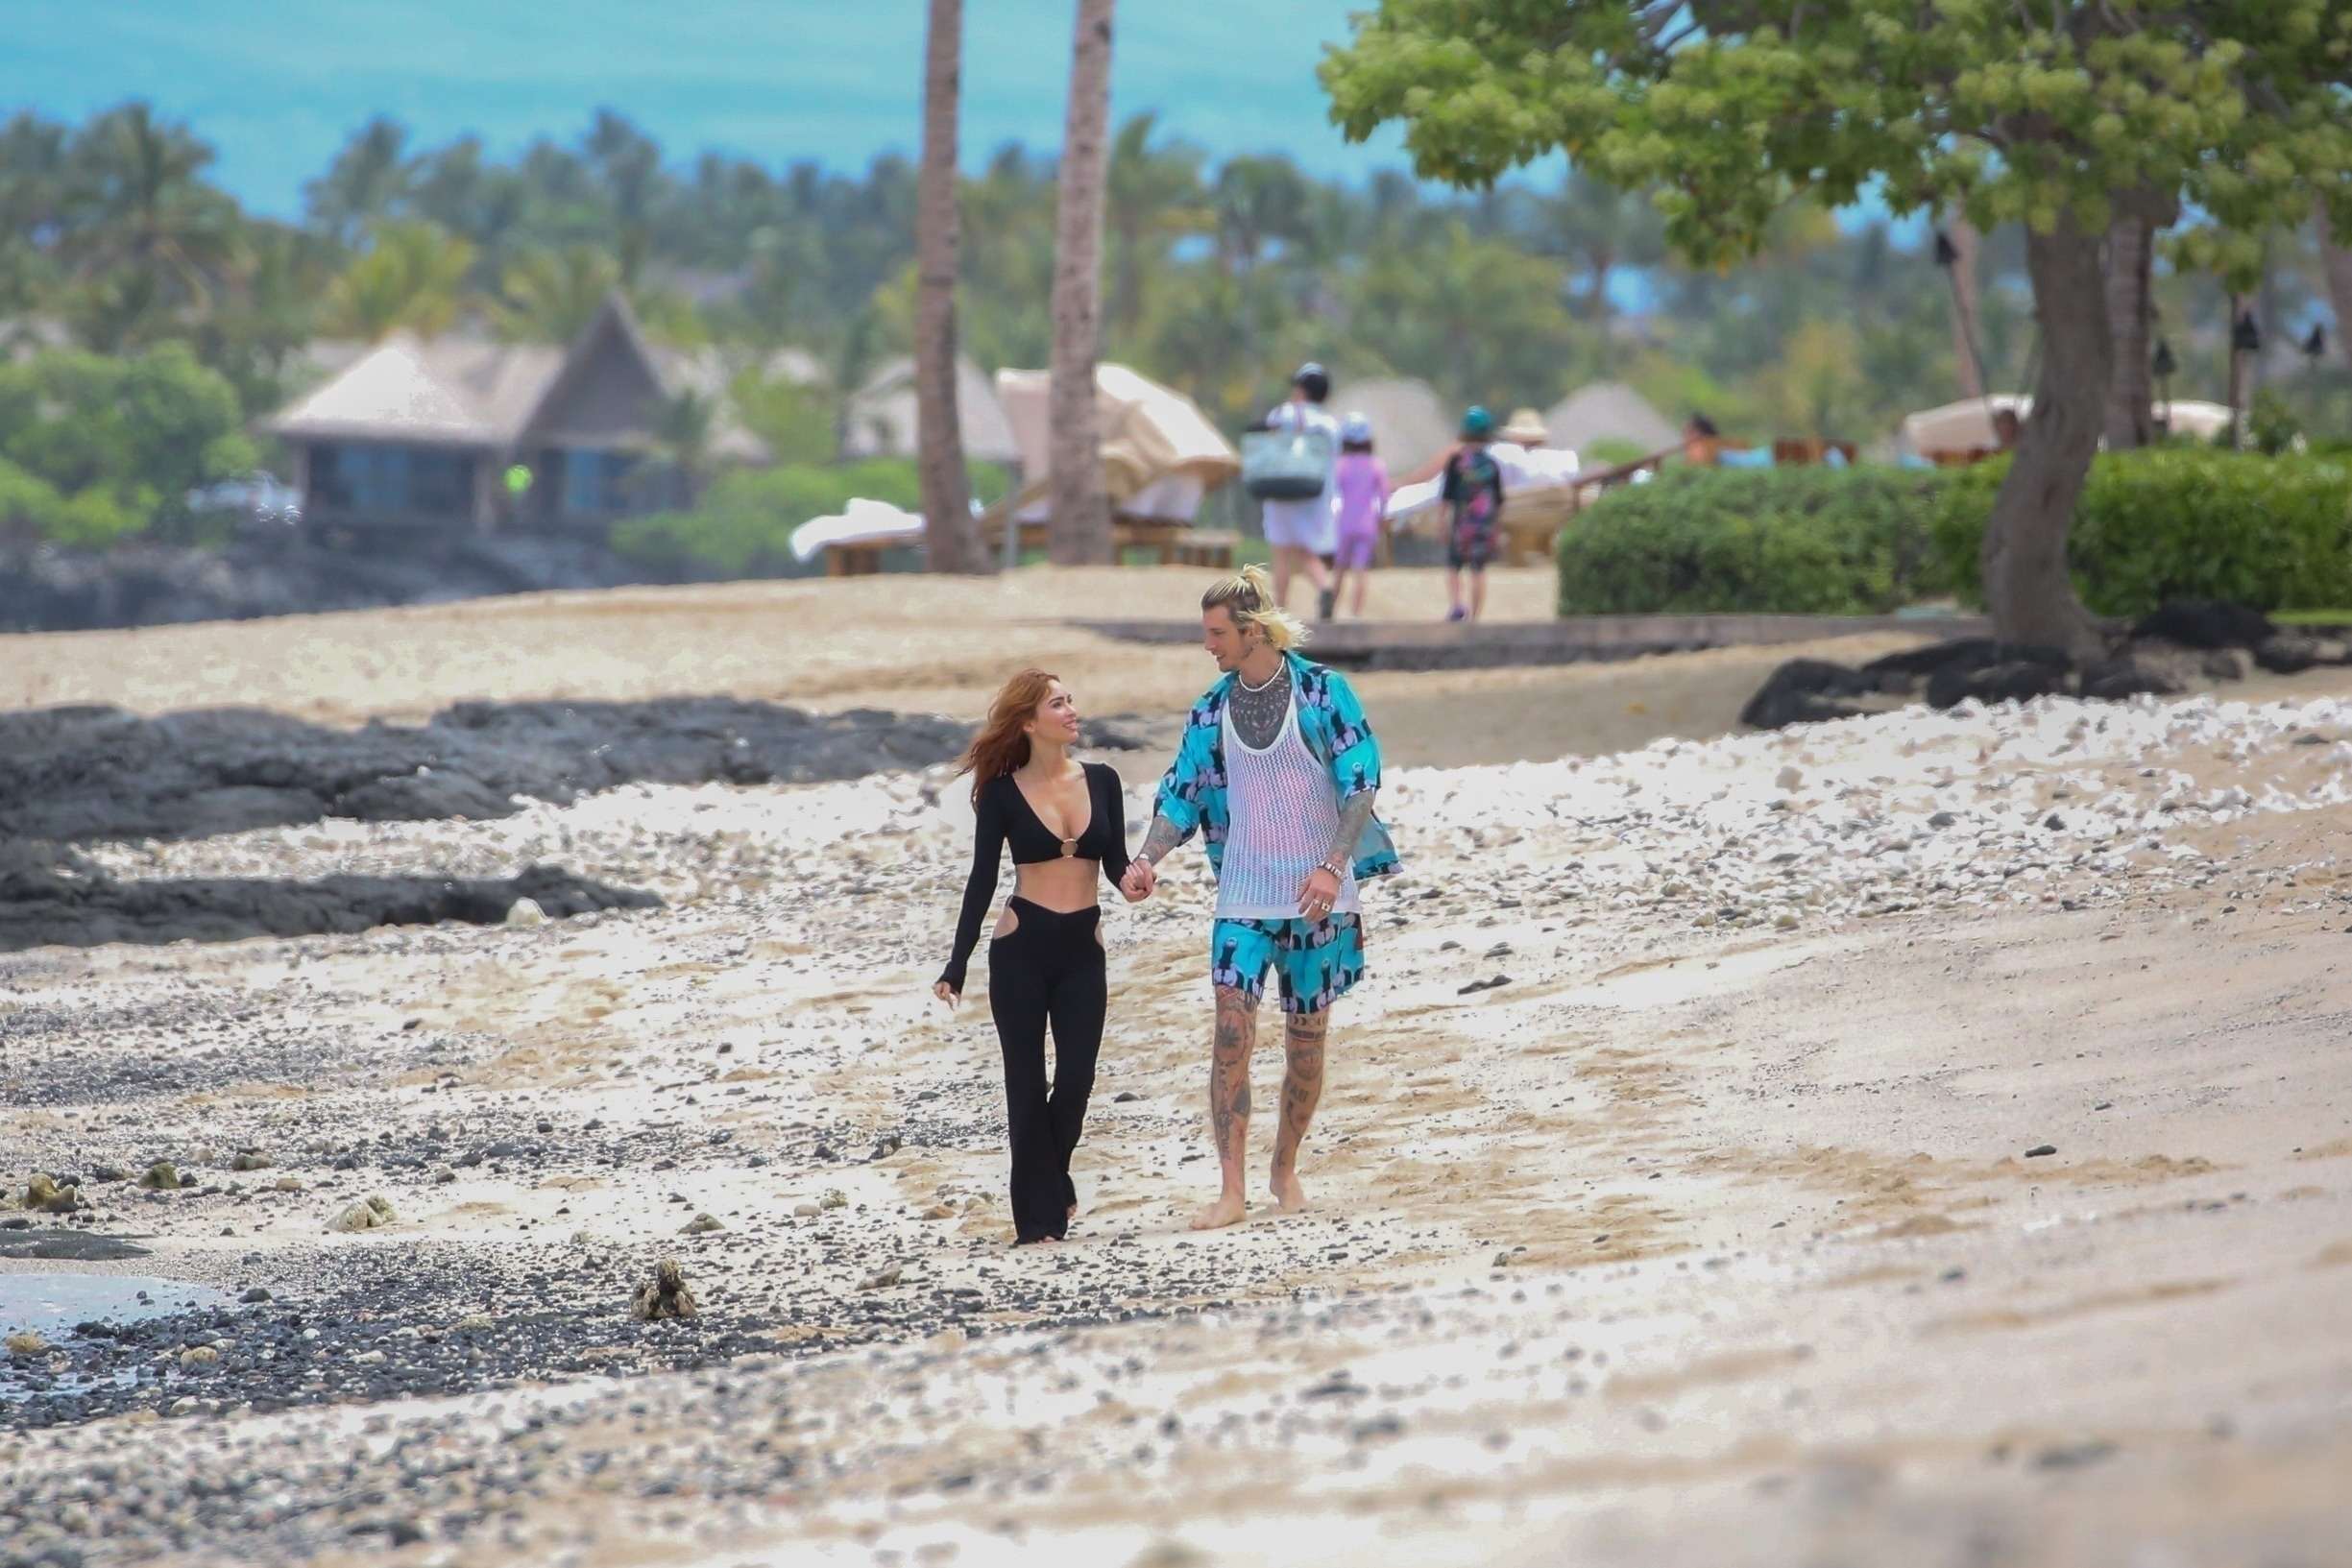 Megan_Fox_-___MGK_are_seen_enjoying_a_vacation_in_Hawaii2C_0406202308.jpg